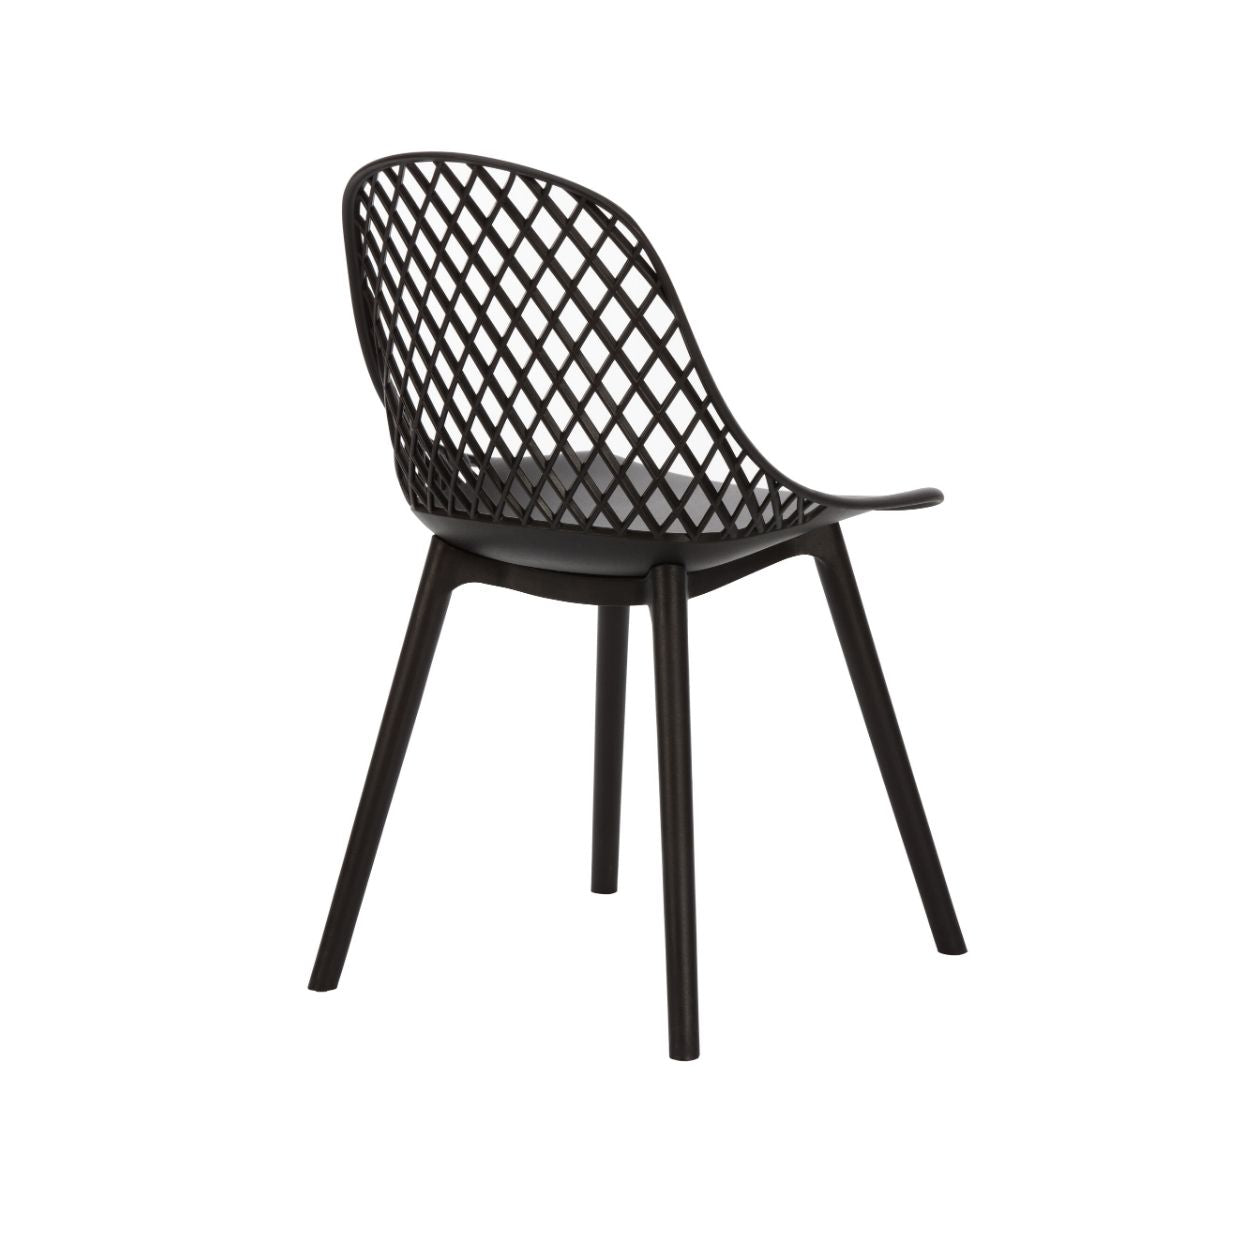 Apollo Outdoor Armless Resin Chair